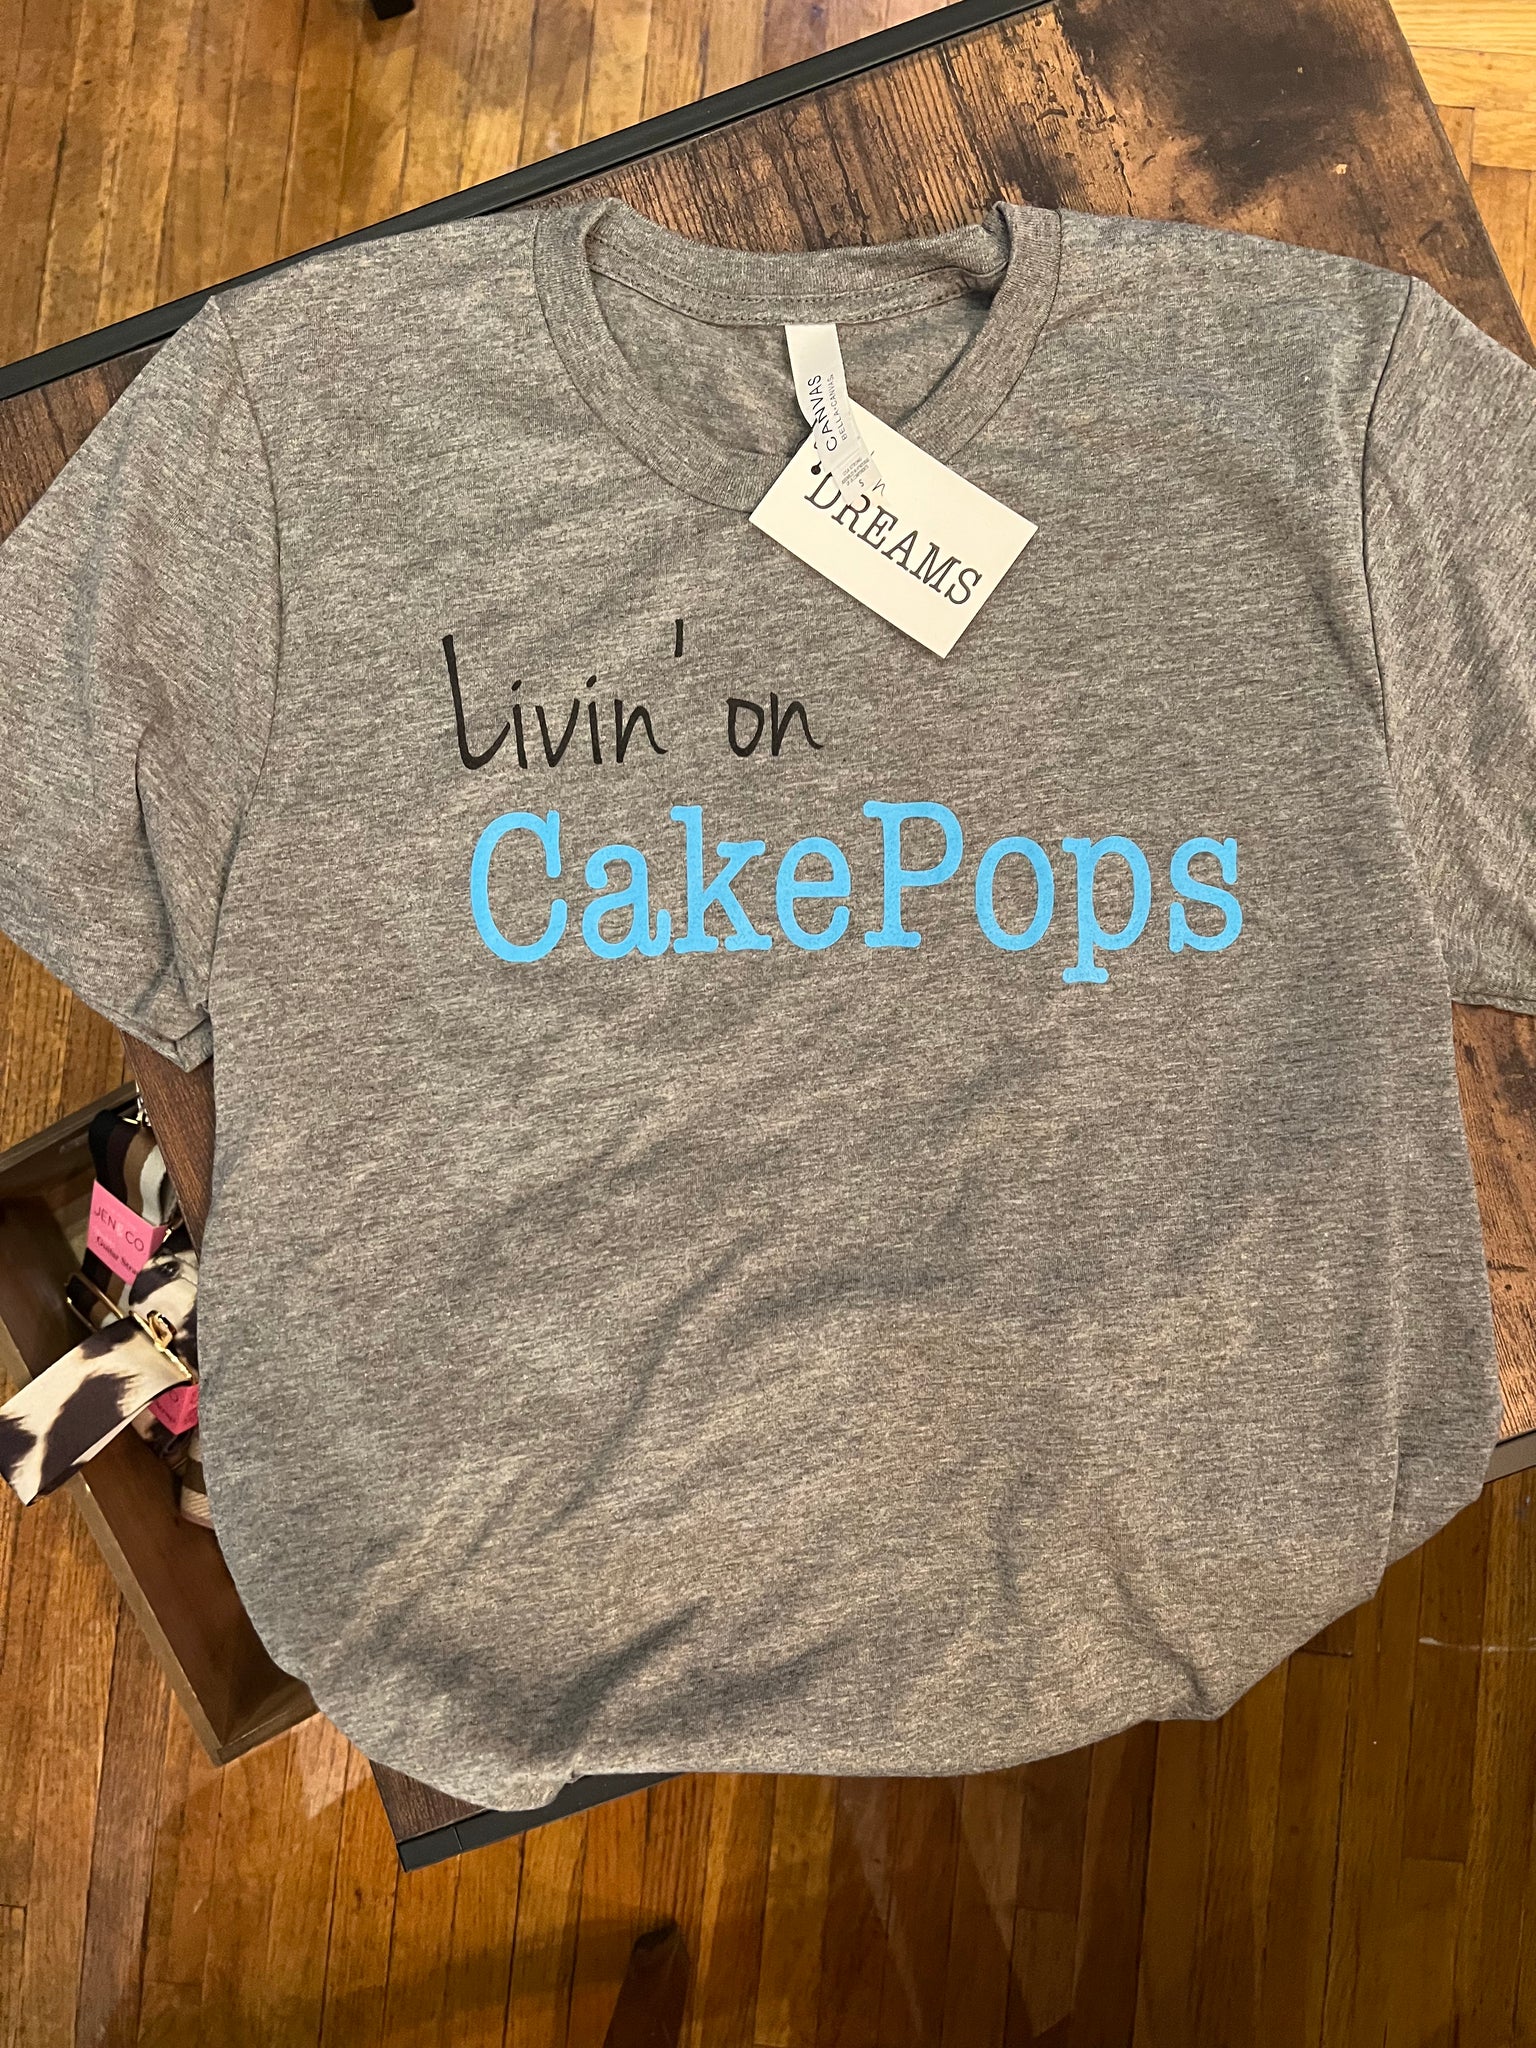 Livin' on CakePops T-shirt